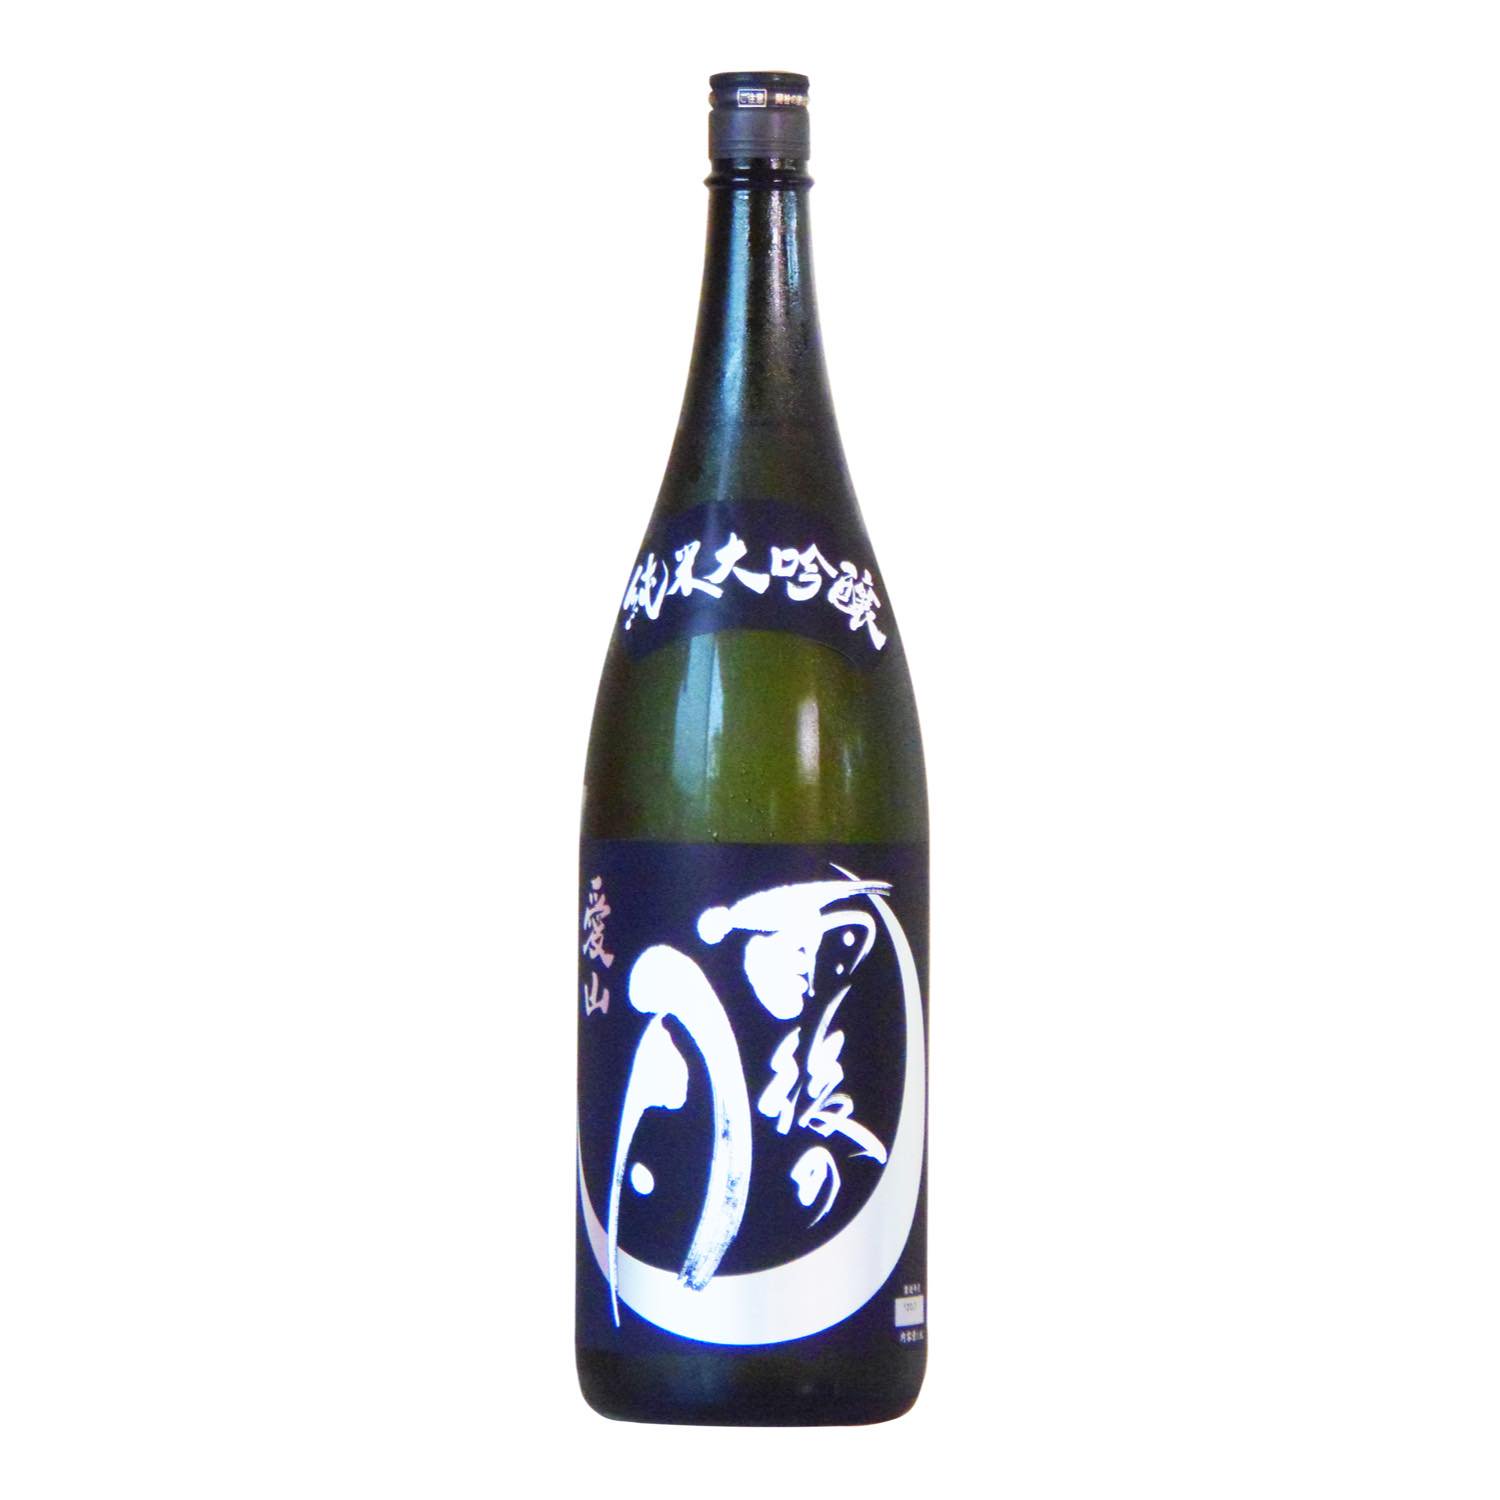 ネットワーク全体の最低価格に挑戦 雨後の月 純米大吟醸 愛山 720ml 日本酒